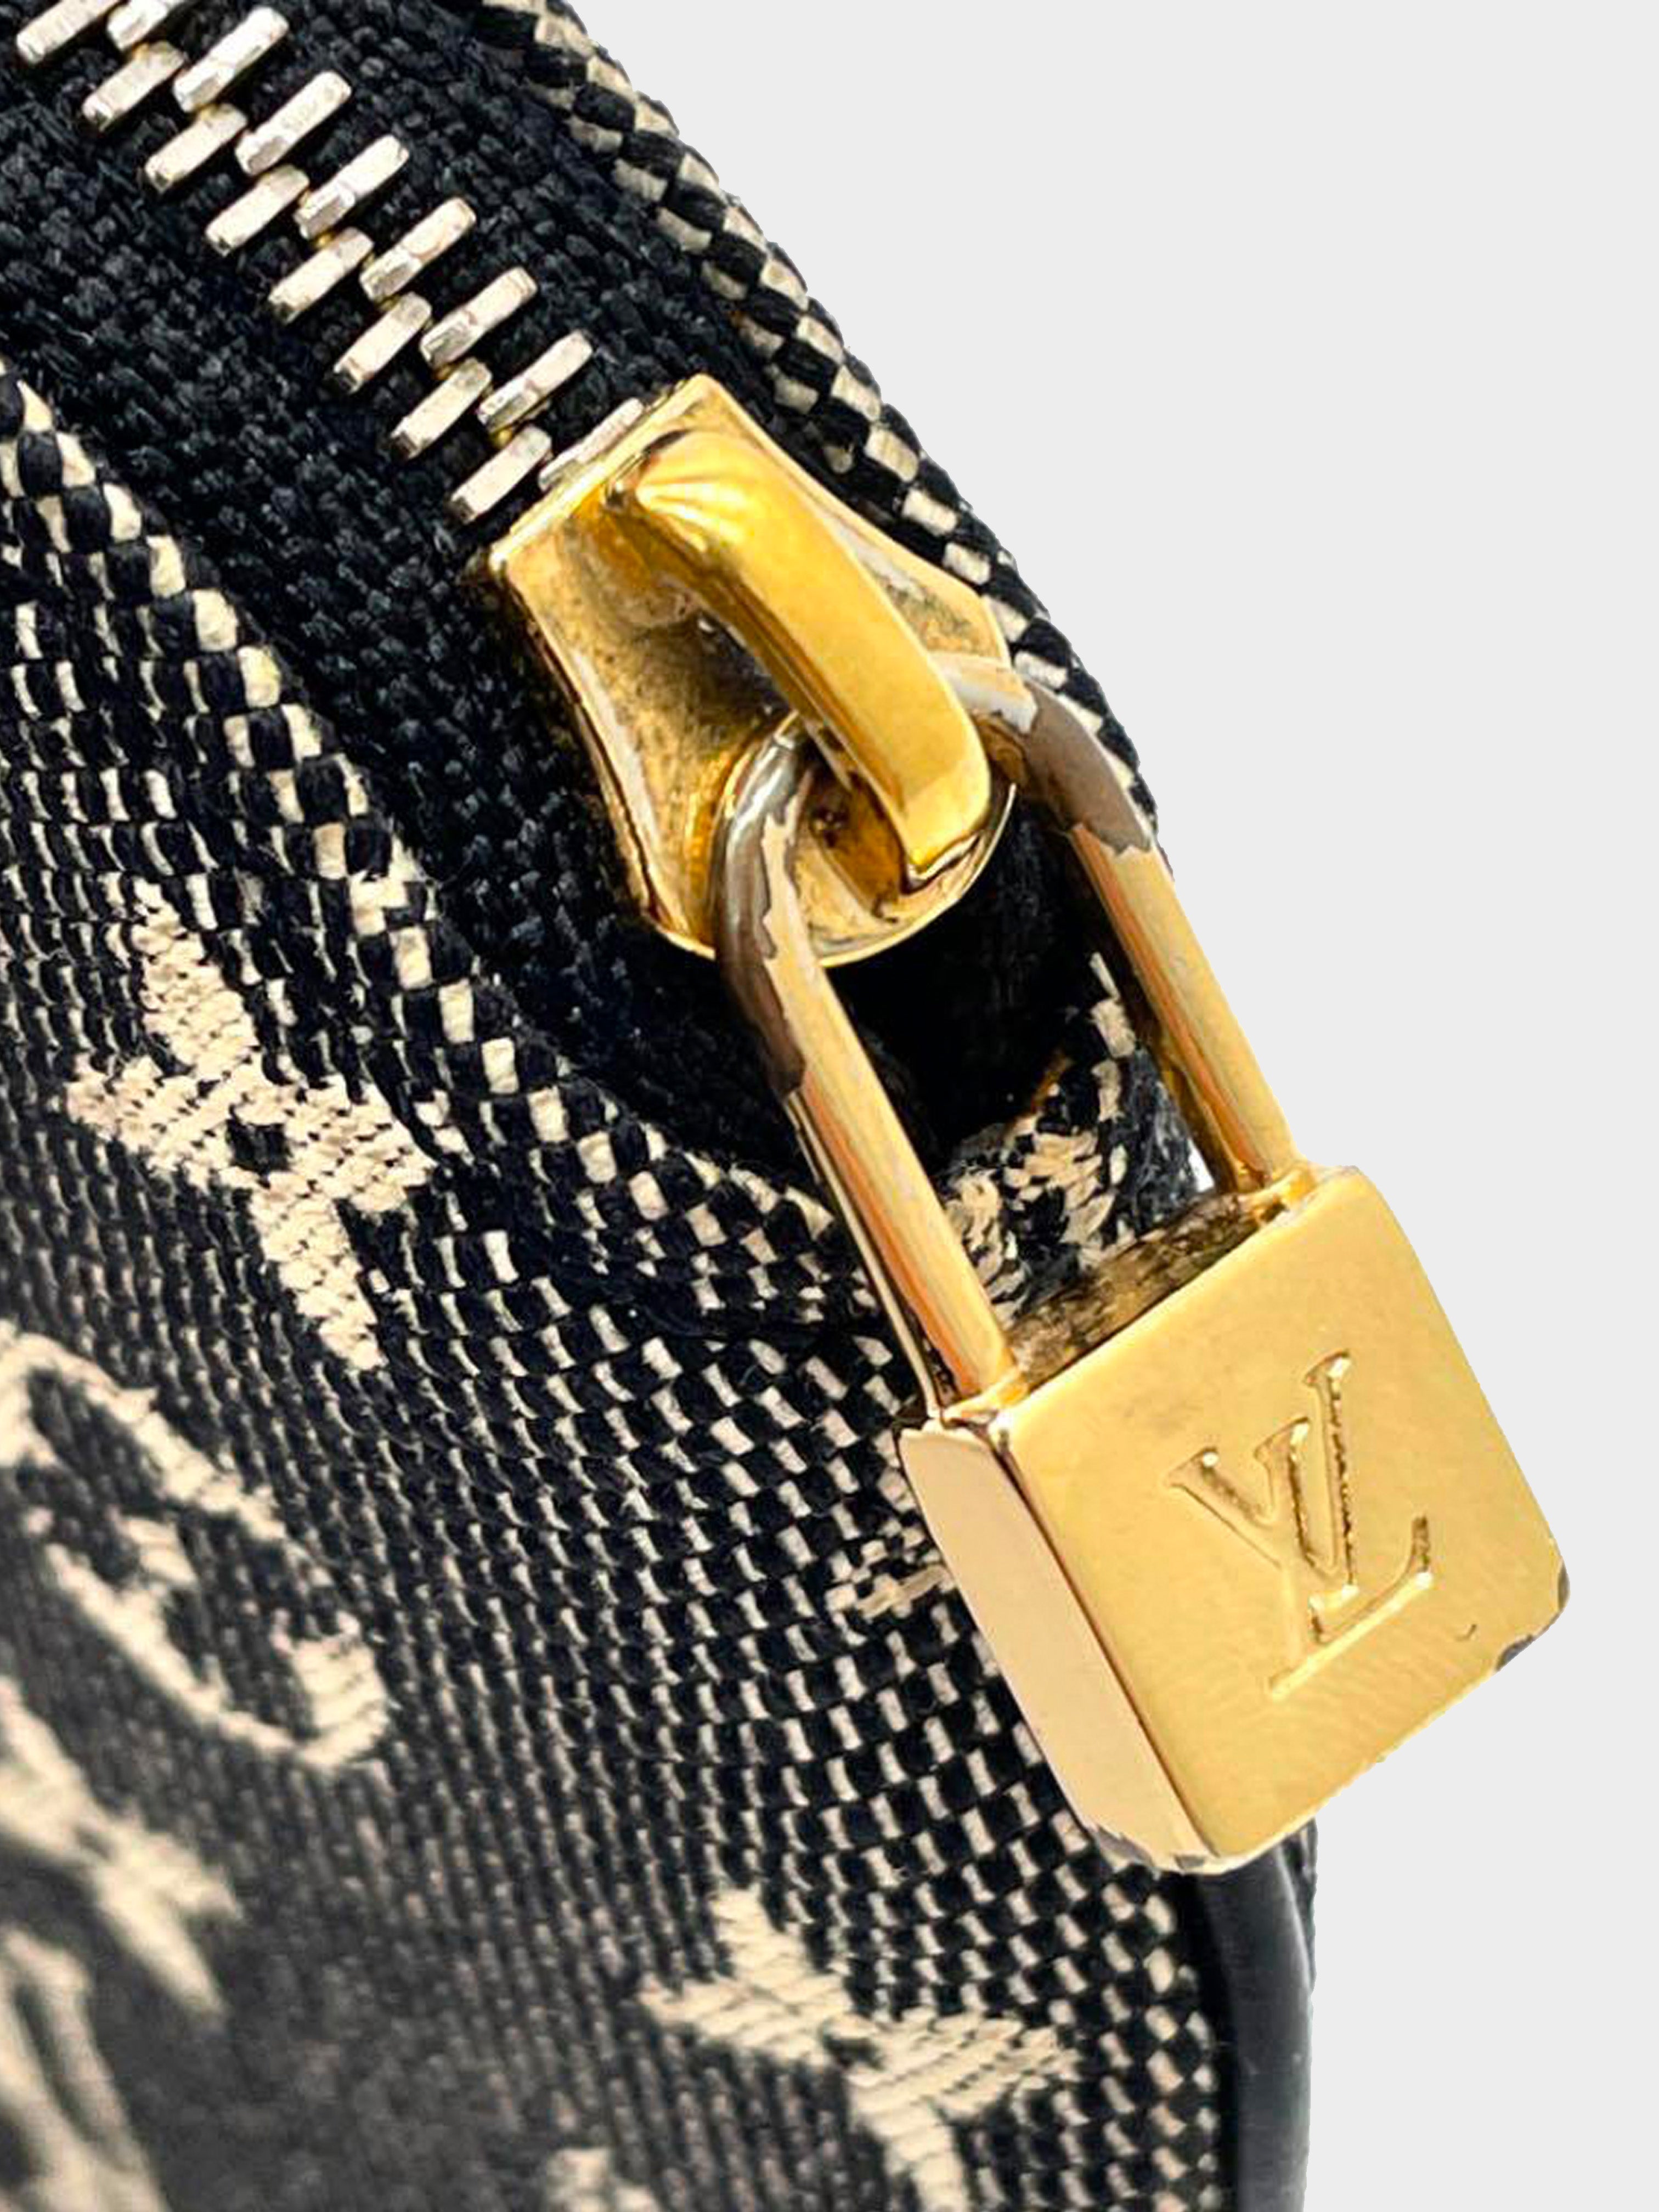 Grey Canvas Louis Vuitton Handbag